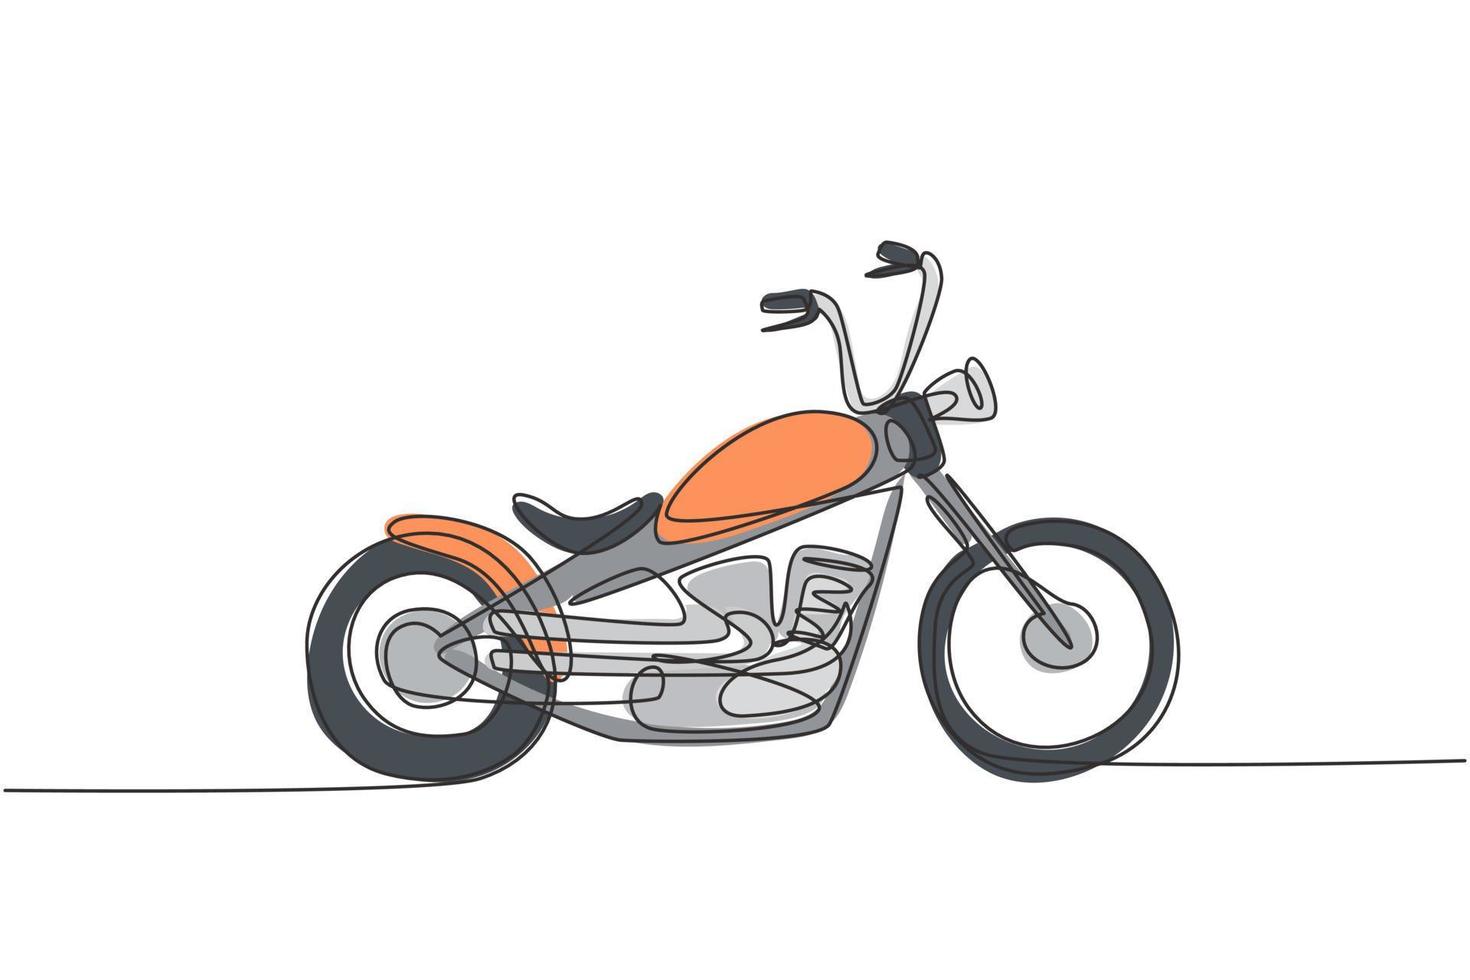 un dibujo de línea continua del icono de motocicleta chopper vintage antiguo retro. Concepto de transporte de moto clásica ilustración gráfica de vector de diseño de dibujo de una sola línea